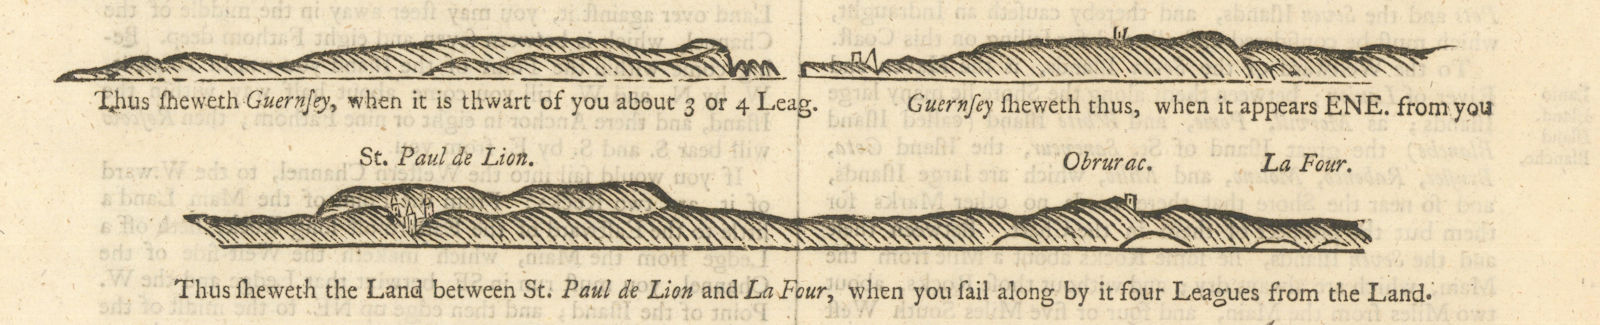 Associate Product Guernsey & Finistere coast profiles. Saint-Pol-de-Léon. MOUNT & PAGE 1758 map